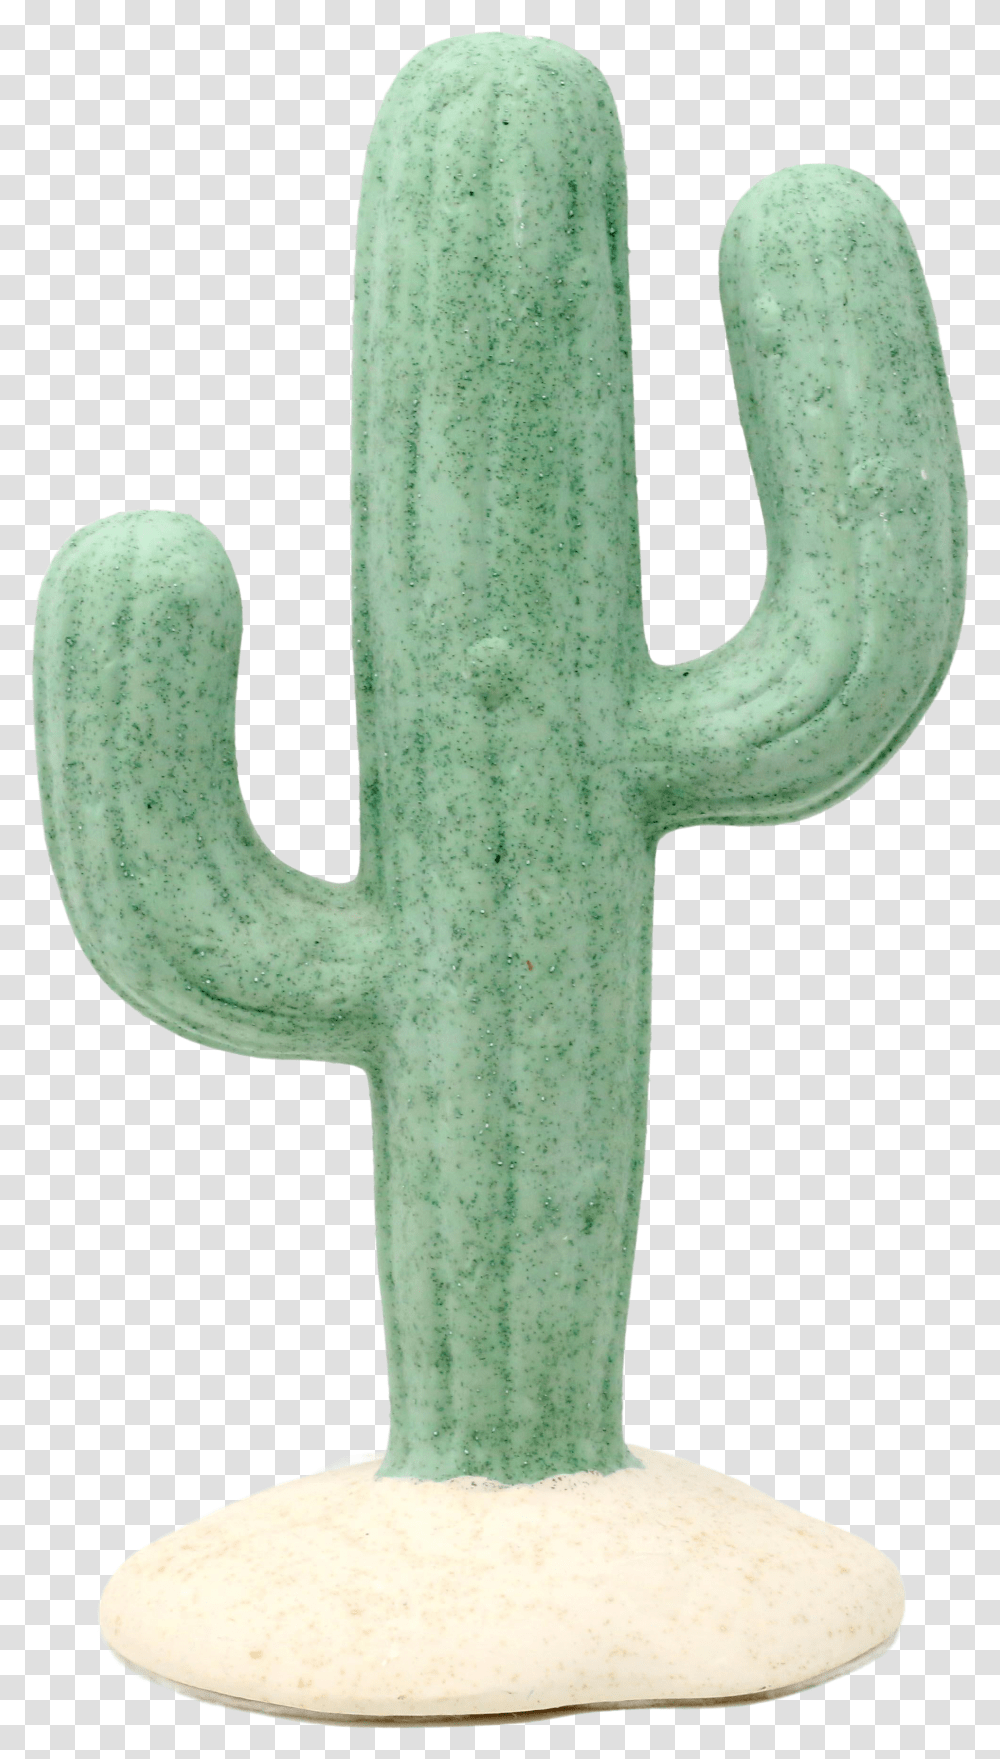 Ceramic Saguaro Cactus Figurine Toy Transparent Png